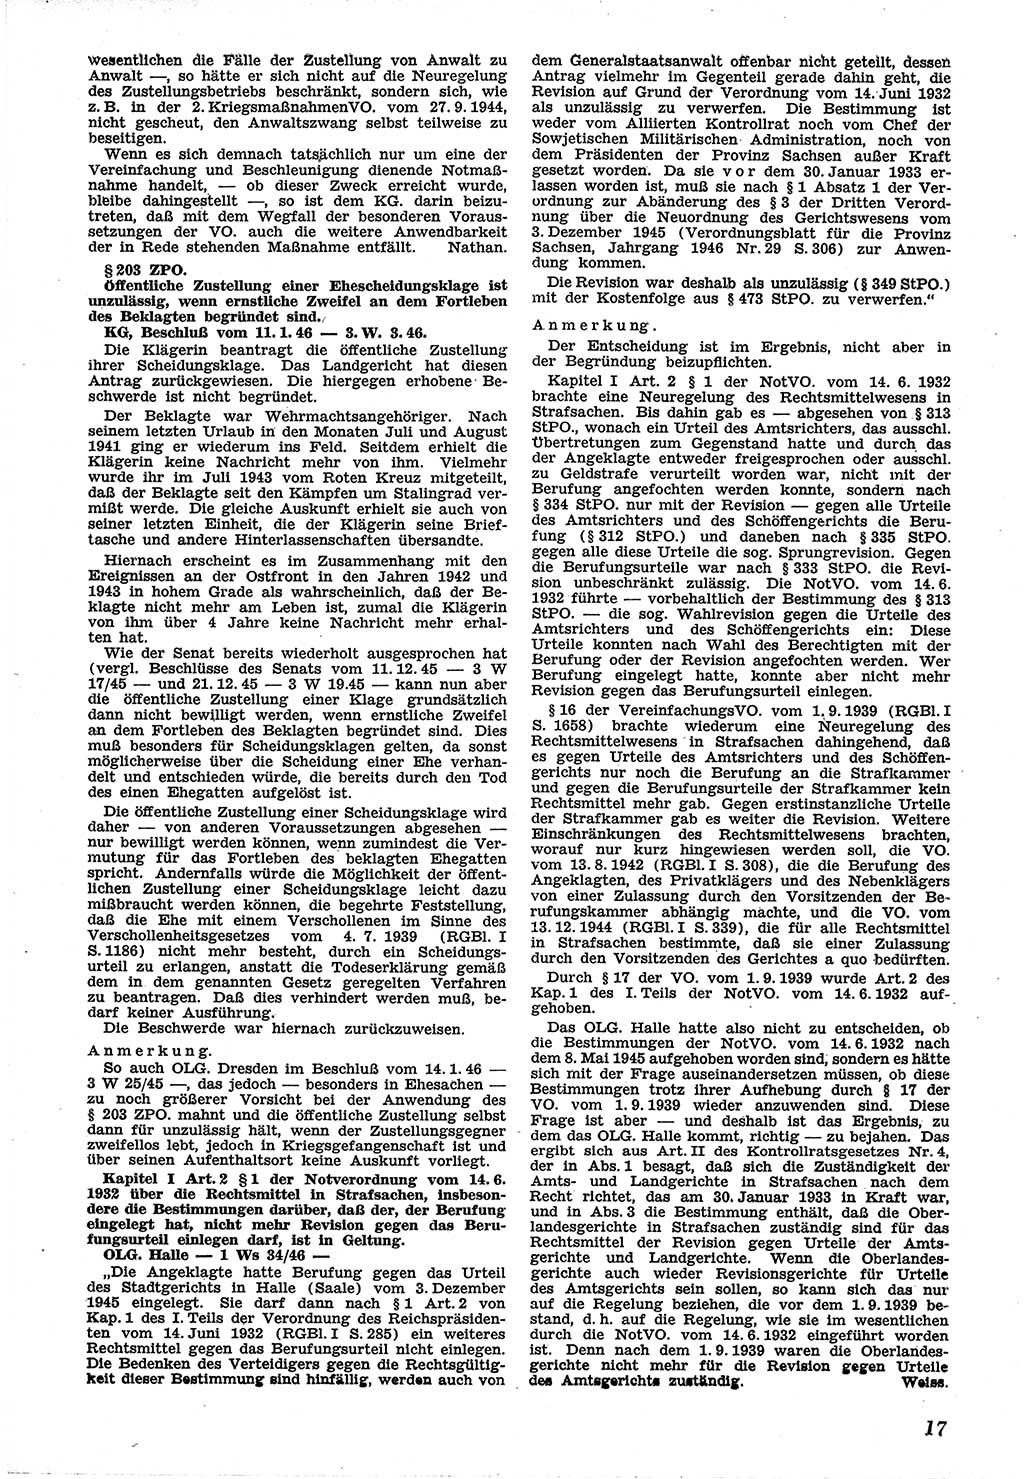 Neue Justiz (NJ), Zeitschrift für Recht und Rechtswissenschaft [Sowjetische Besatzungszone (SBZ) Deutschland], 1. Jahrgang 1947, Seite 17 (NJ SBZ Dtl. 1947, S. 17)